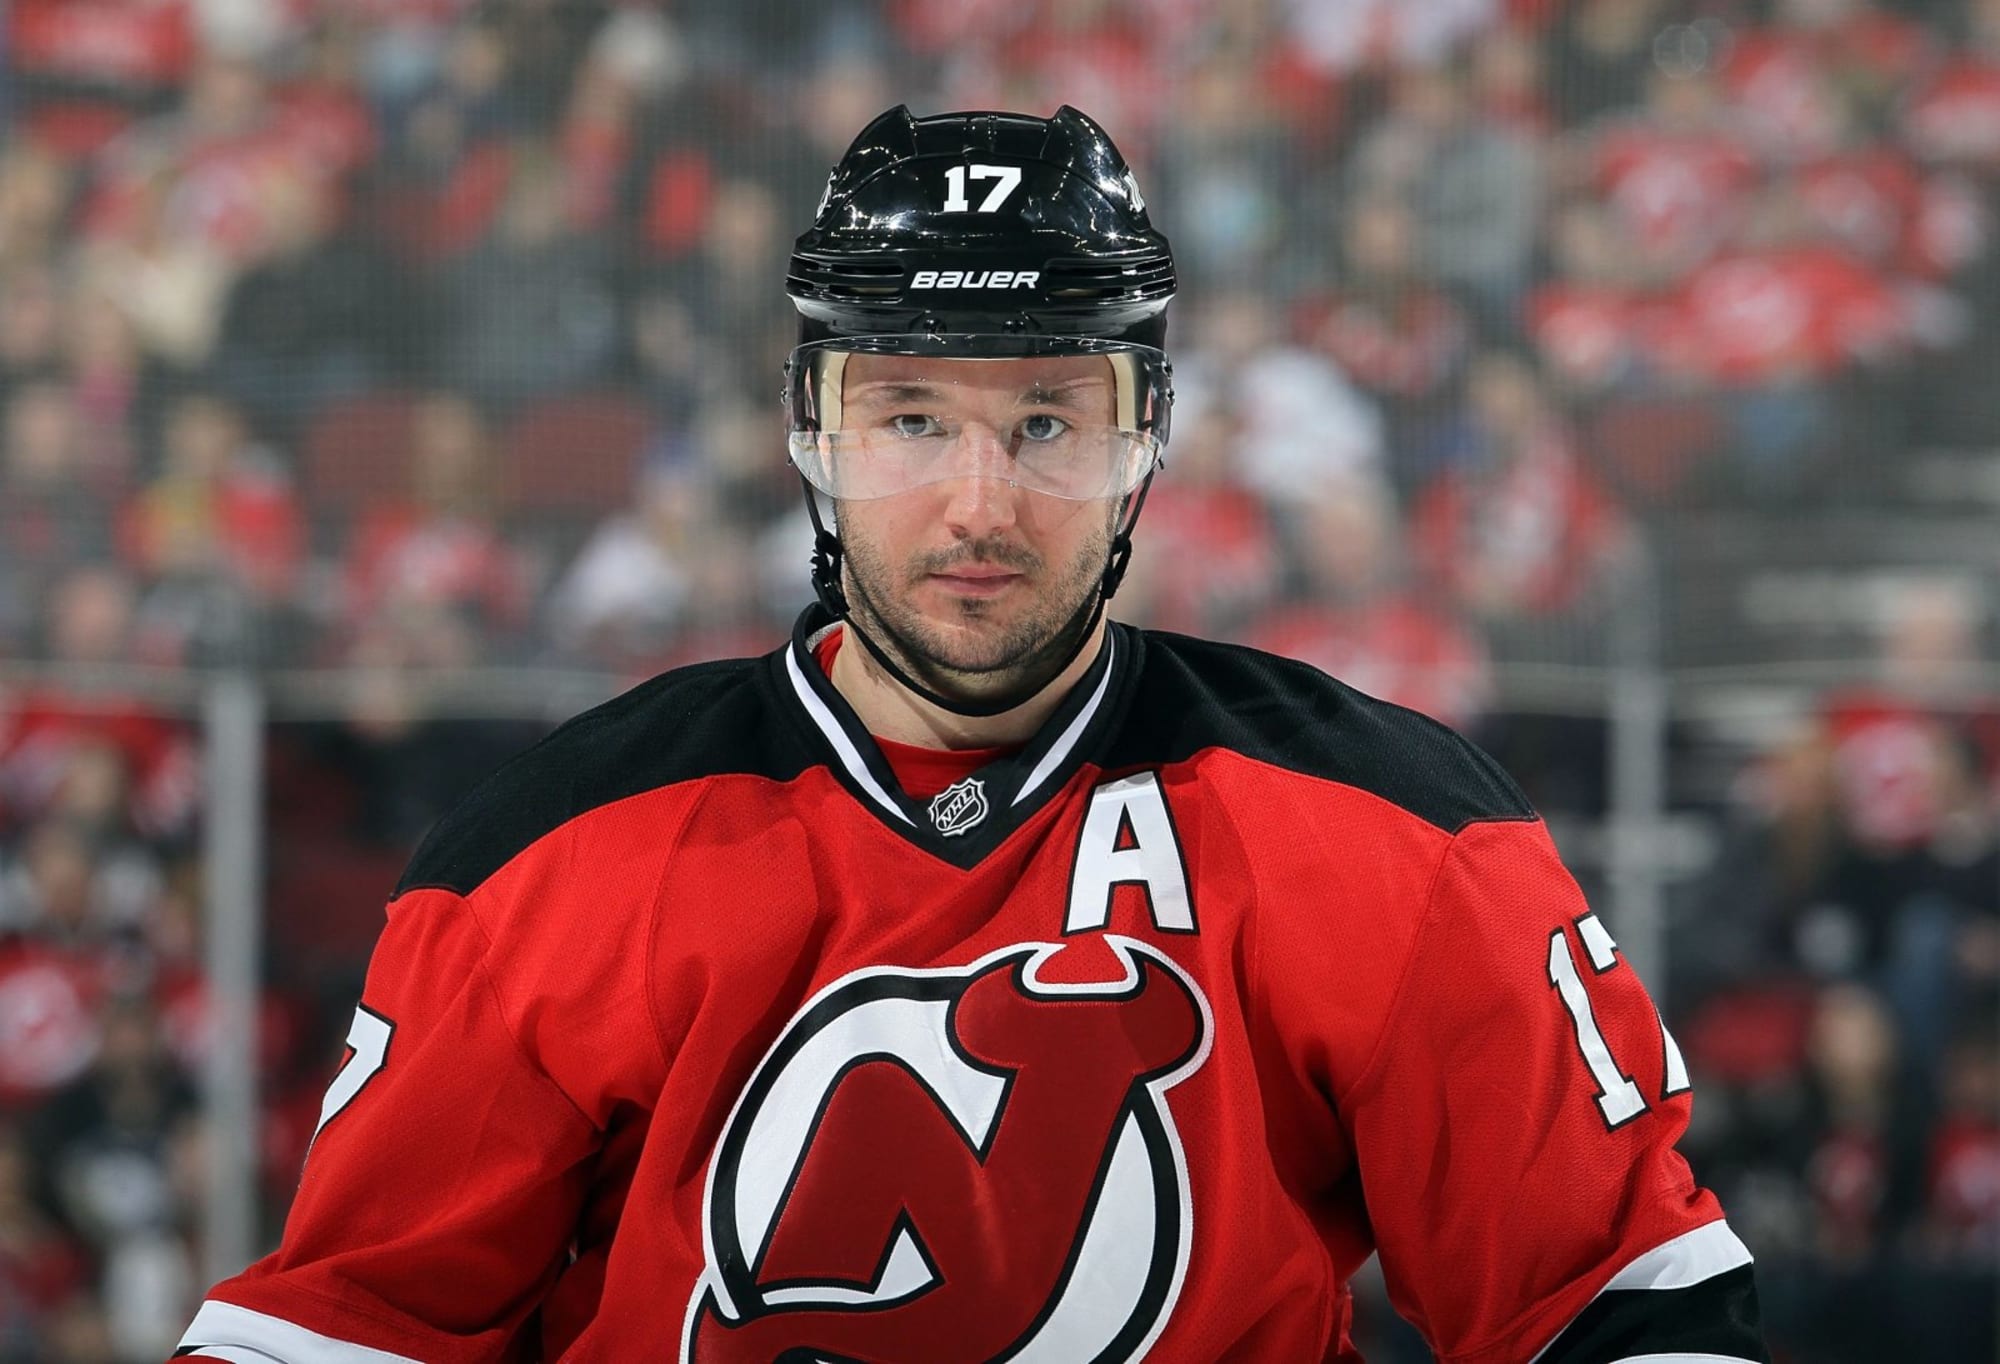 Devils star Ilya Kovalchuk retires from NHL - The Boston Globe